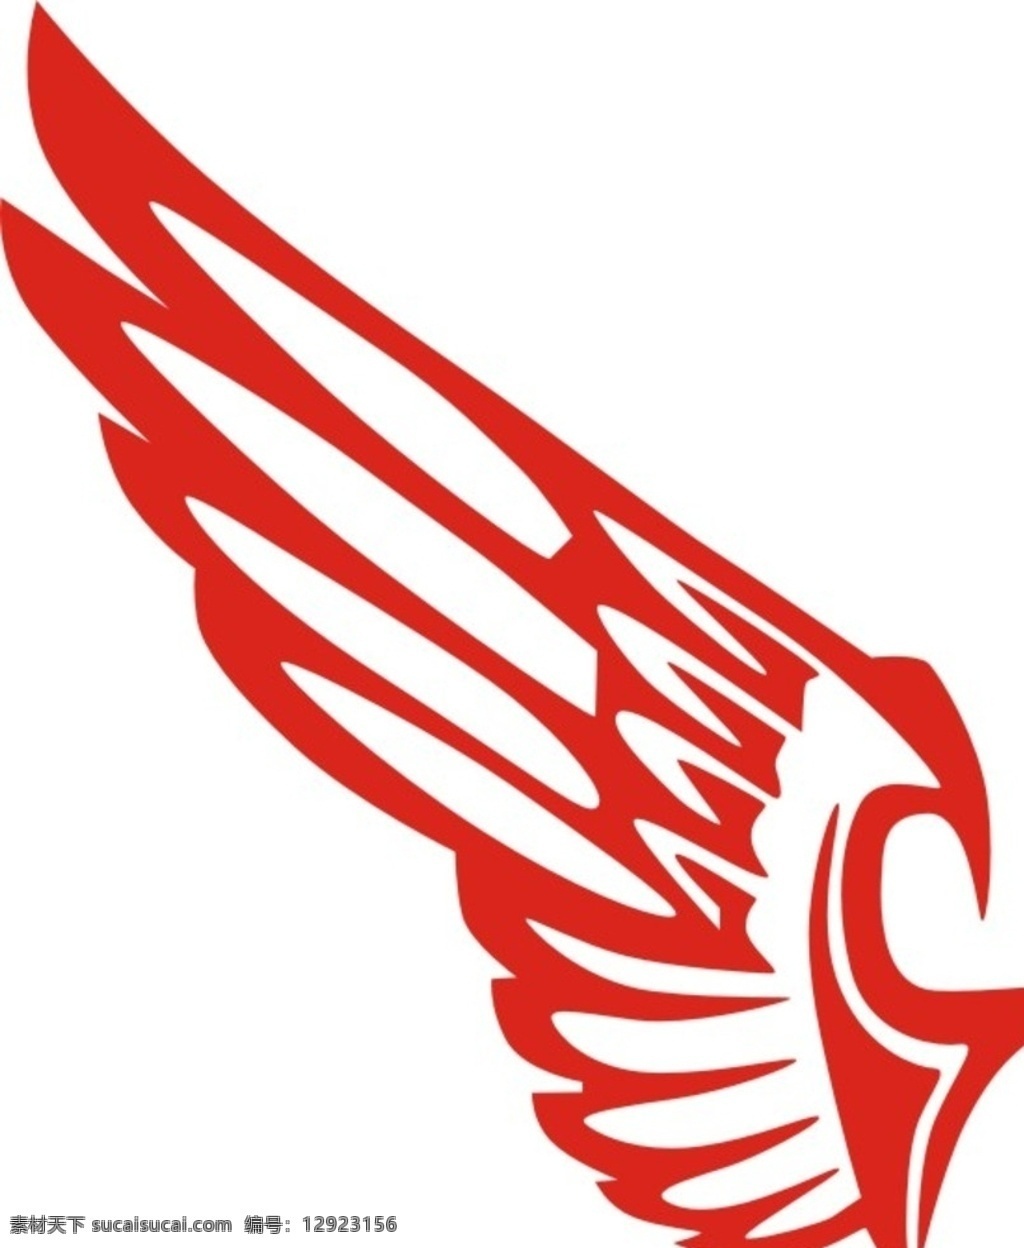 埃及 休闲 航空 logo 埃及休闲航空 air leisure 航空logo 国际航空 标志图标 企业 标志